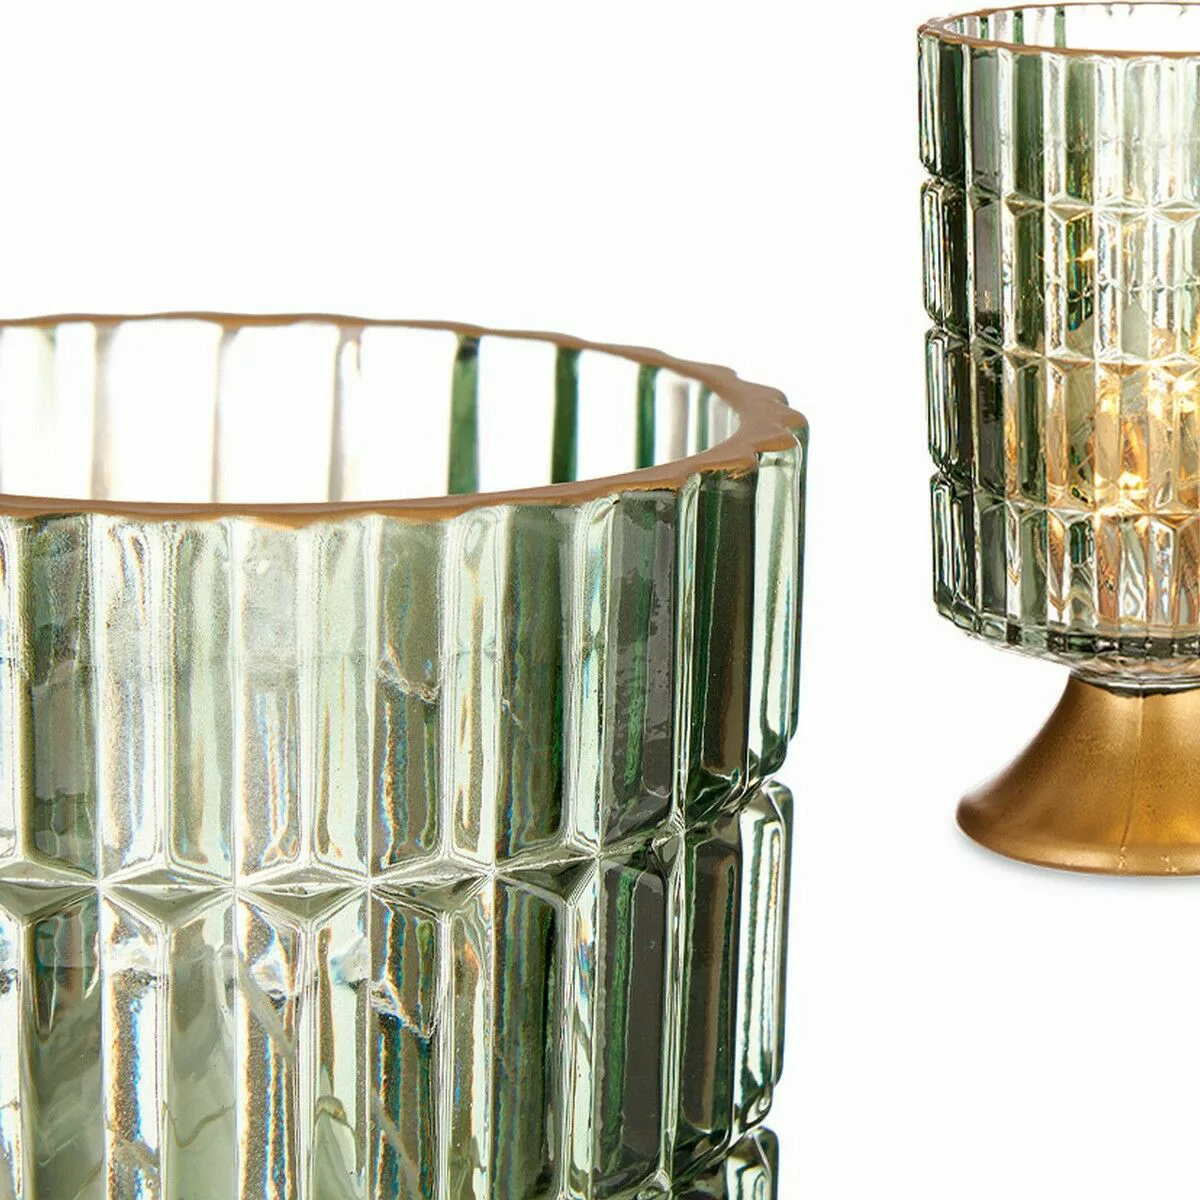 Led-laterne Metall Golden Grün Glas (10,7 X 18 X 10,7 Cm) günstig online kaufen